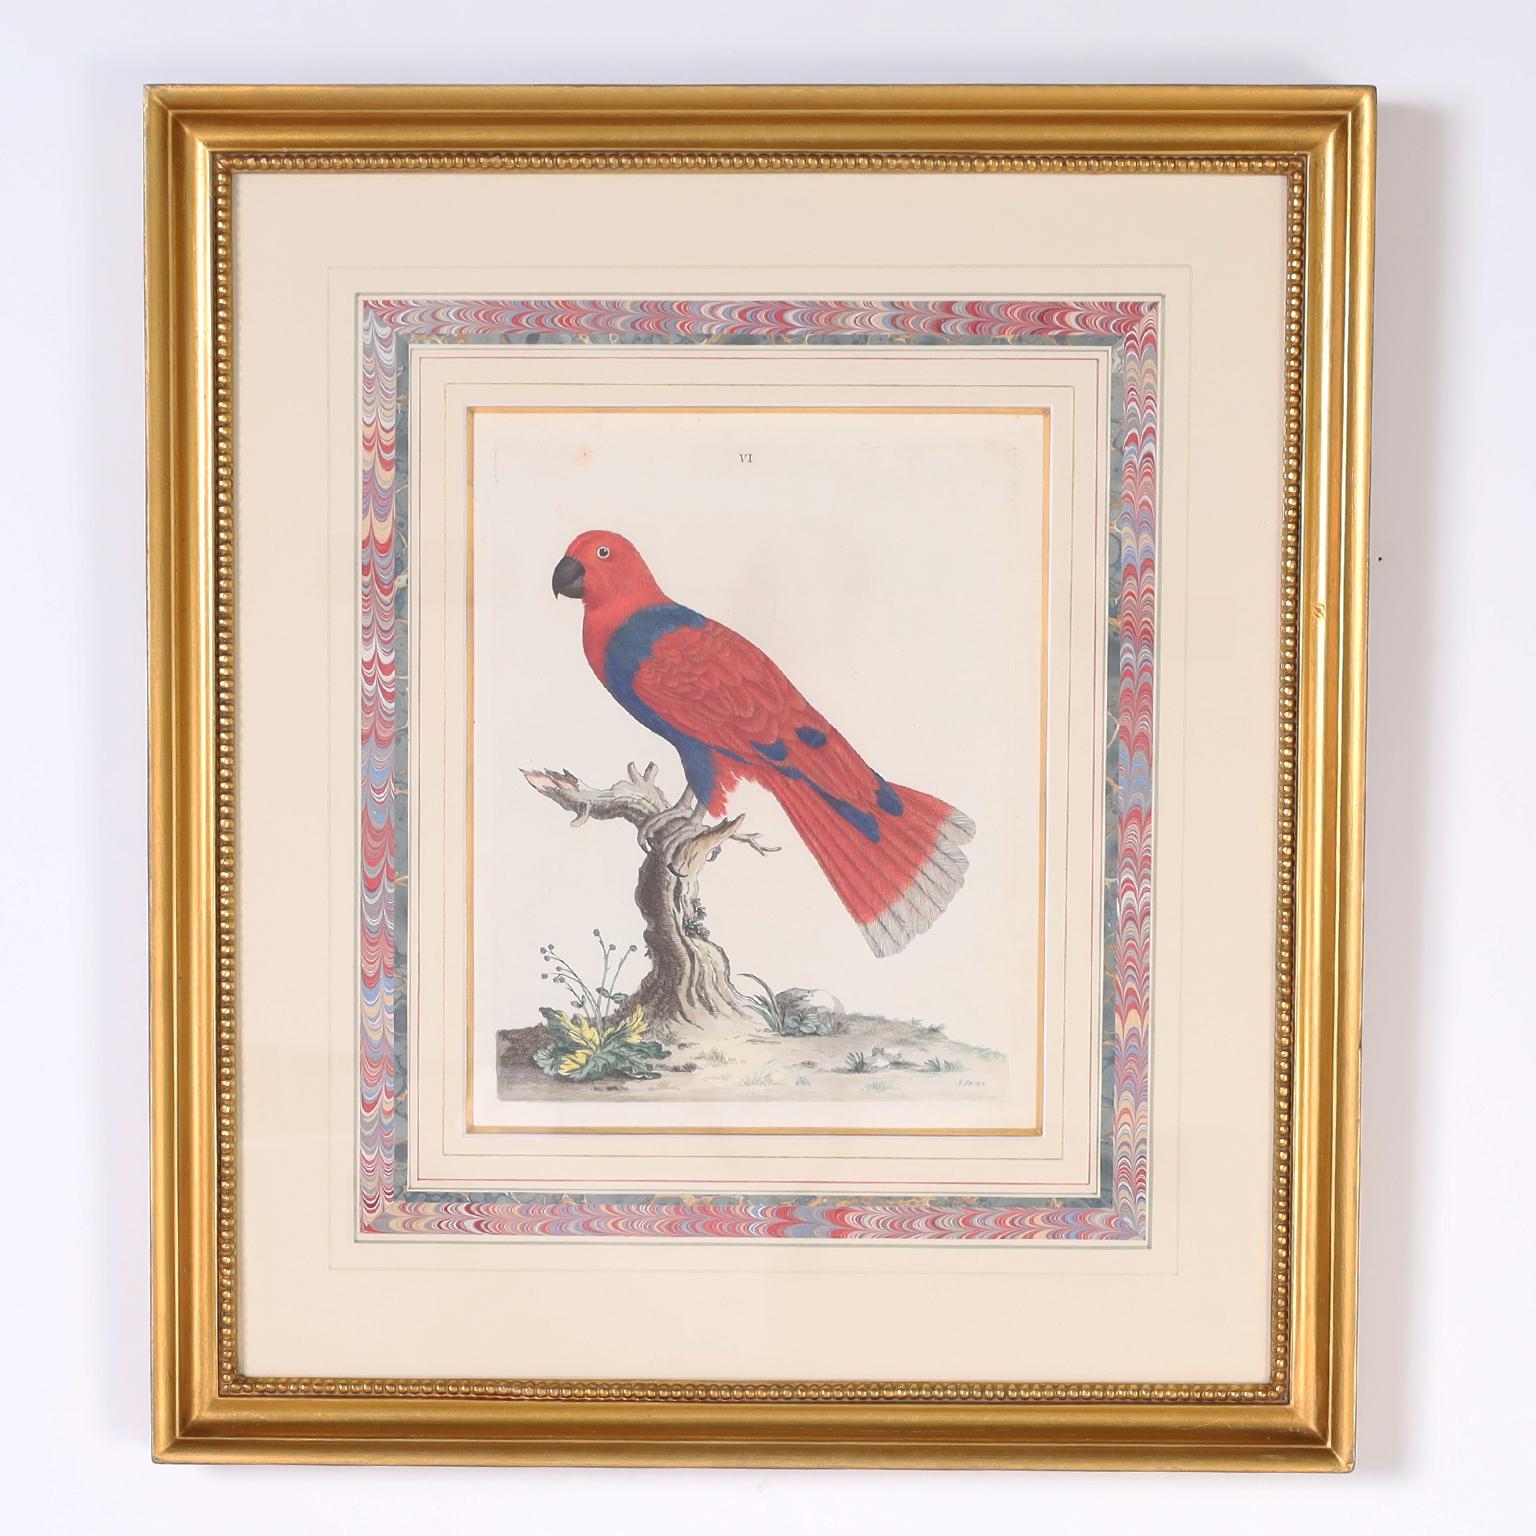 Drei antike handkolorierte Gravuren von Vögeln – Print von Peter Brown